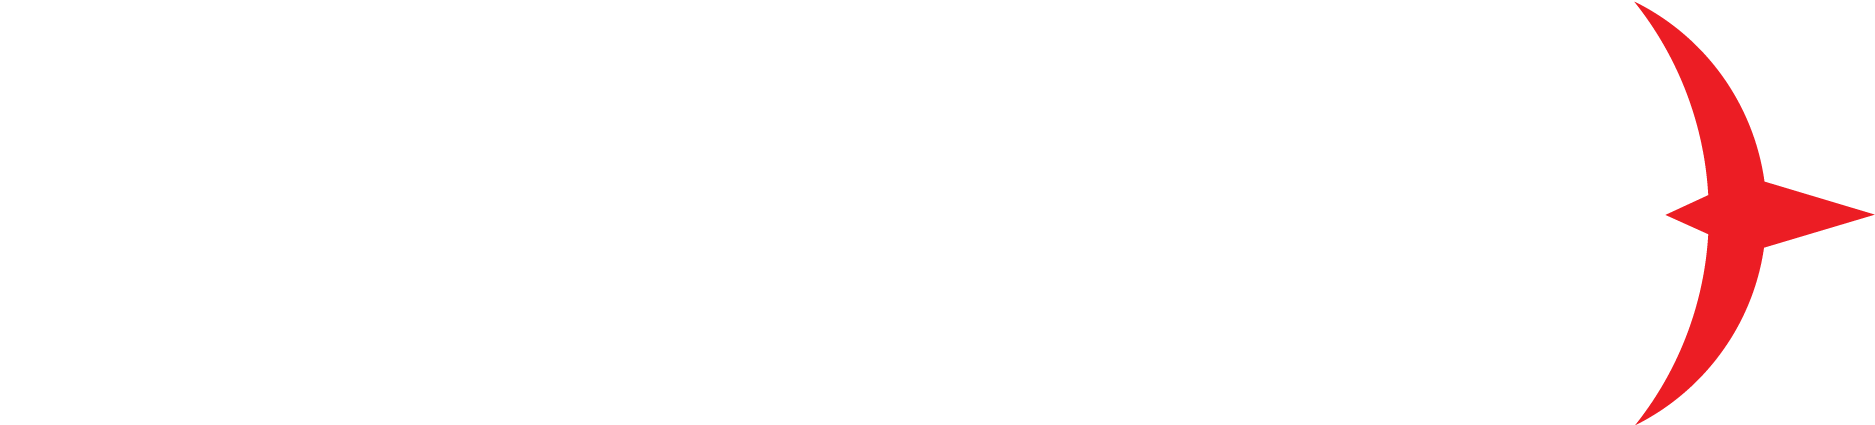 heroic-logo-white.png